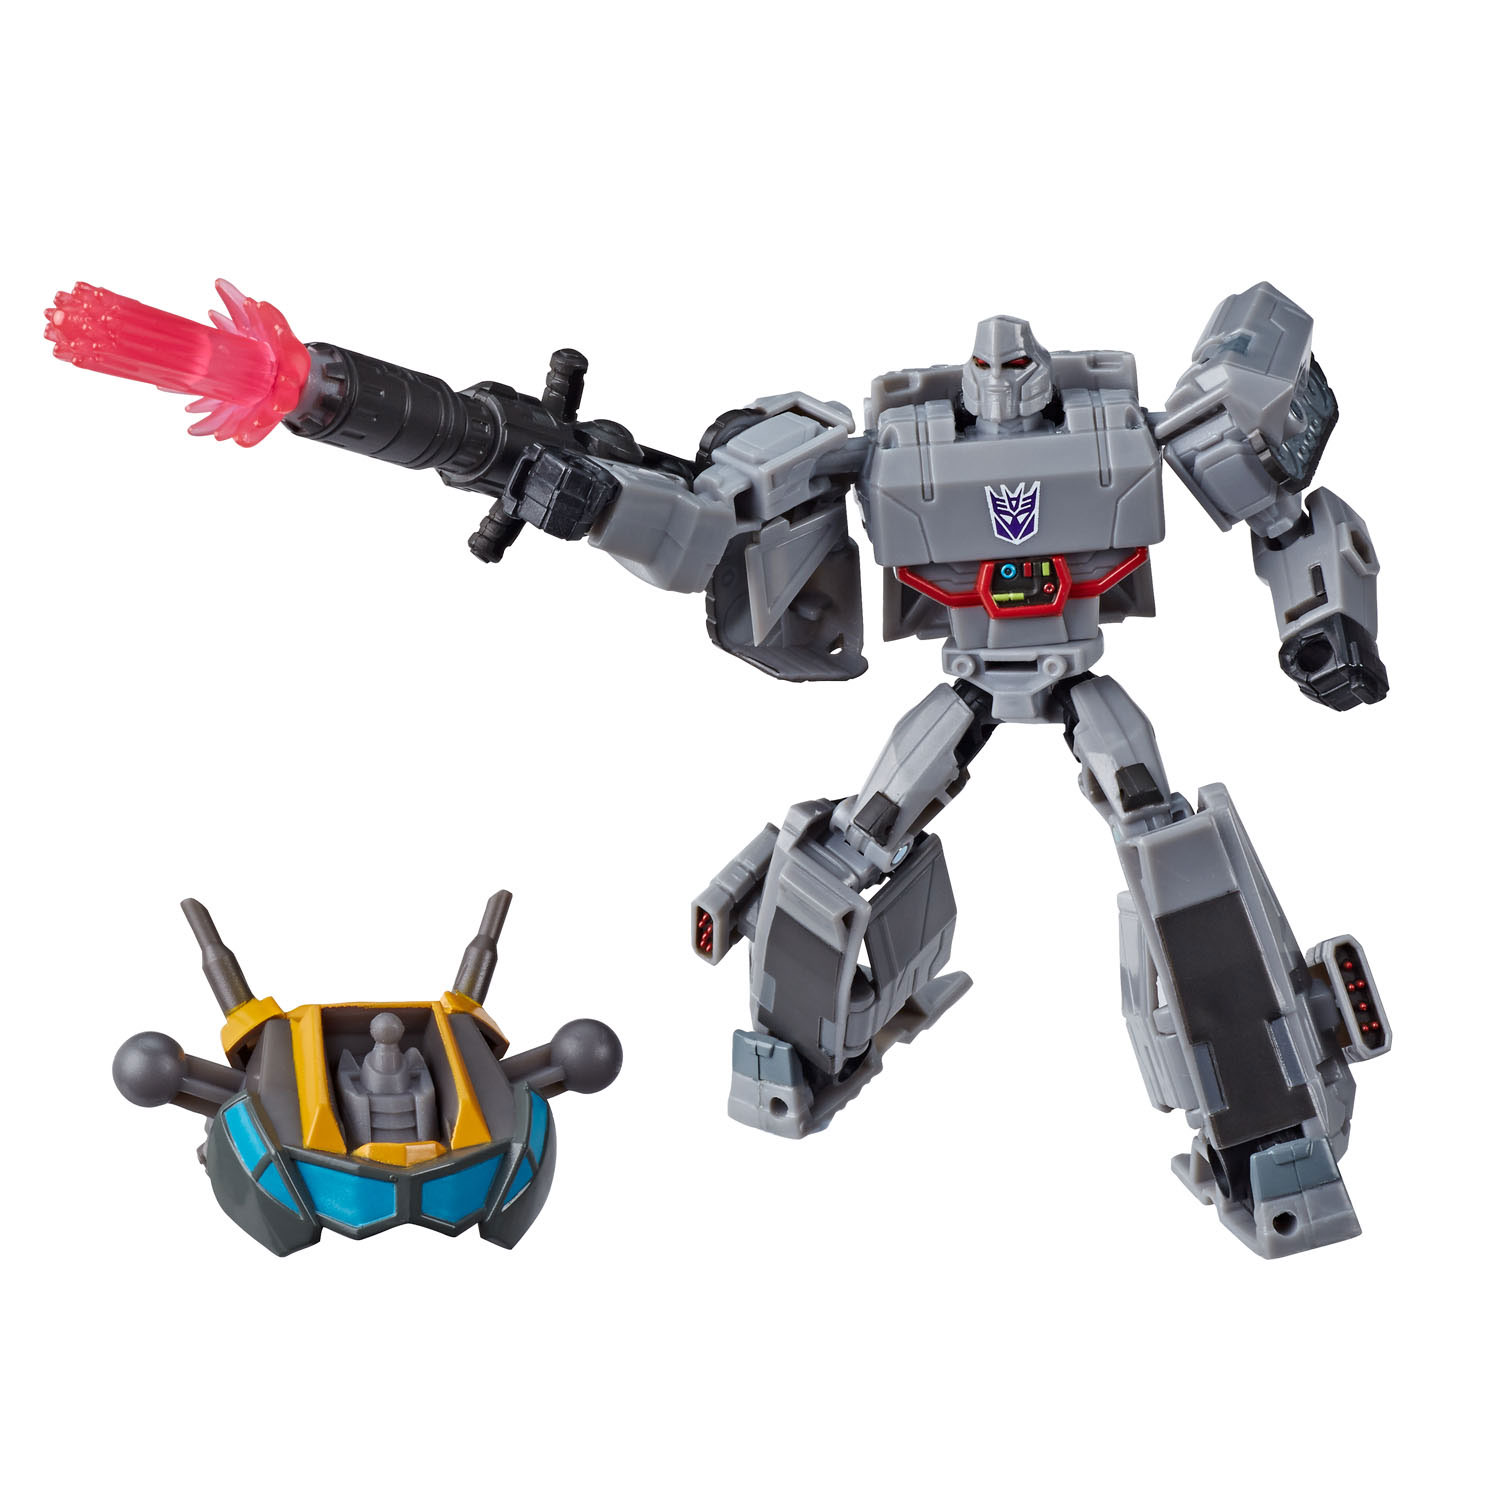 Speciaal Economie Vrijgevigheid Transformers Cyberverse Deluxe - Megatron online kopen | Lobbes Speelgoed